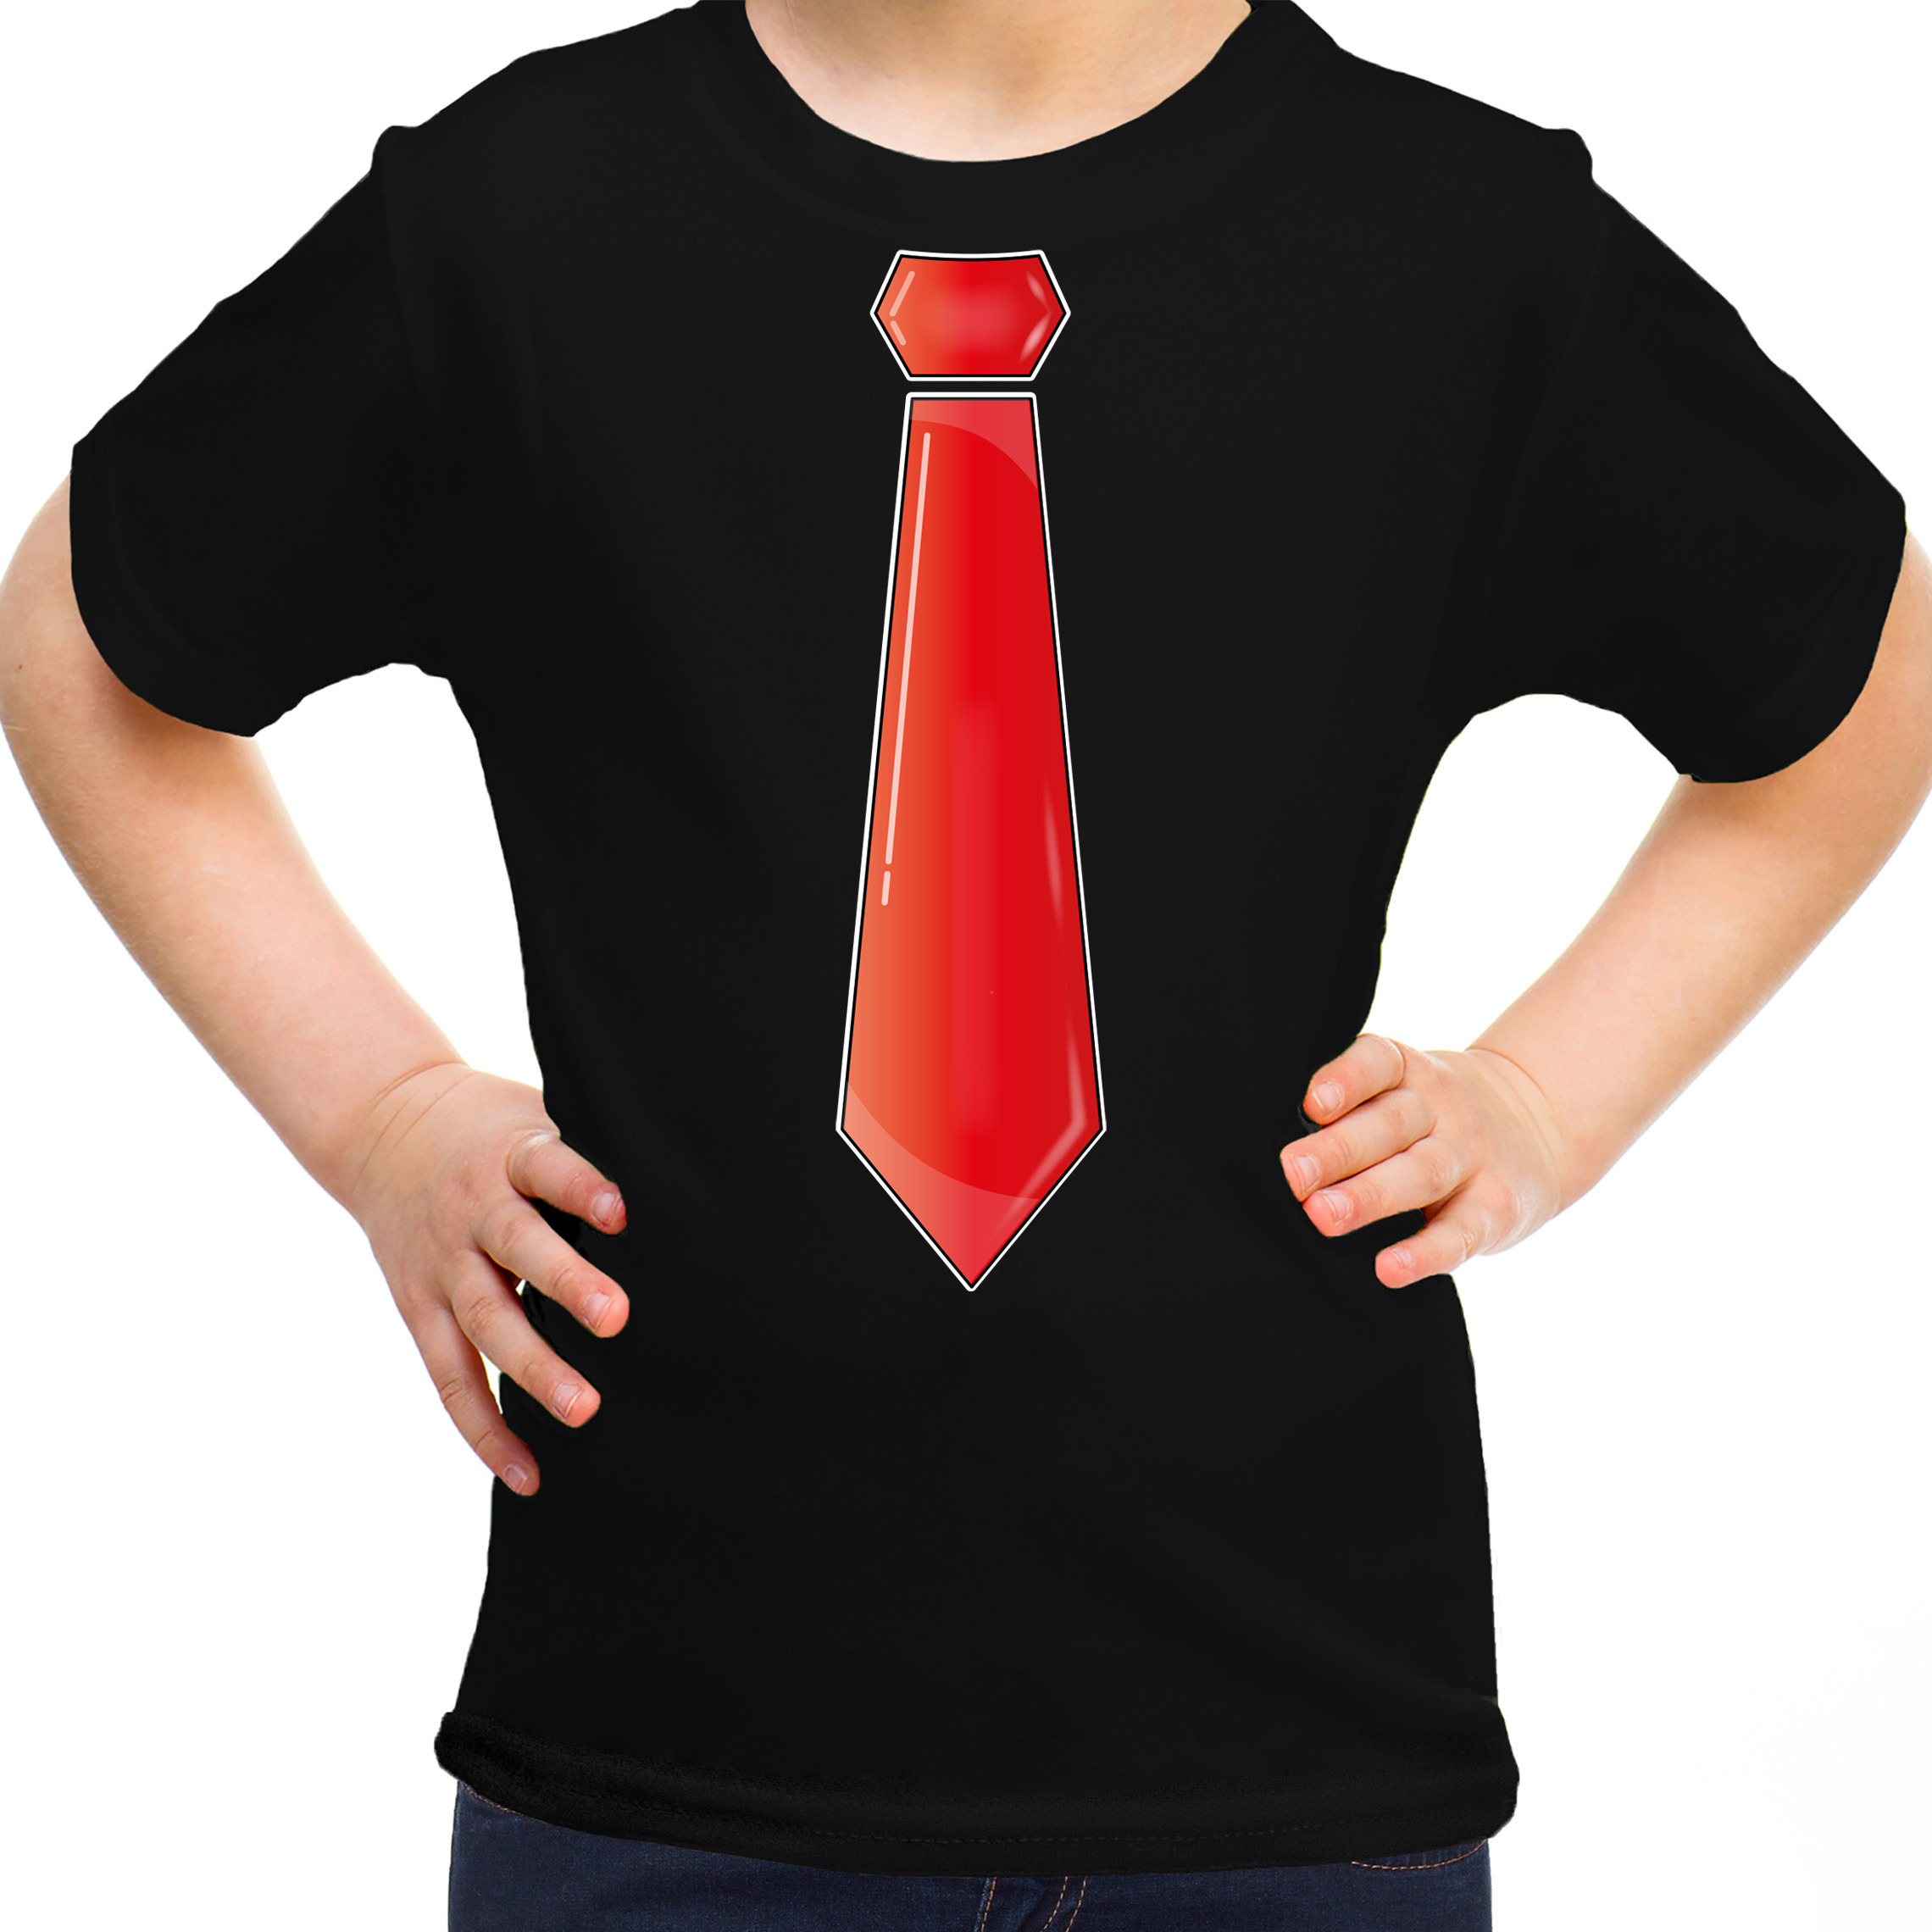 Verkleed t-shirt voor kinderen stropdas zwart meisje carnaval-themafeest kostuum